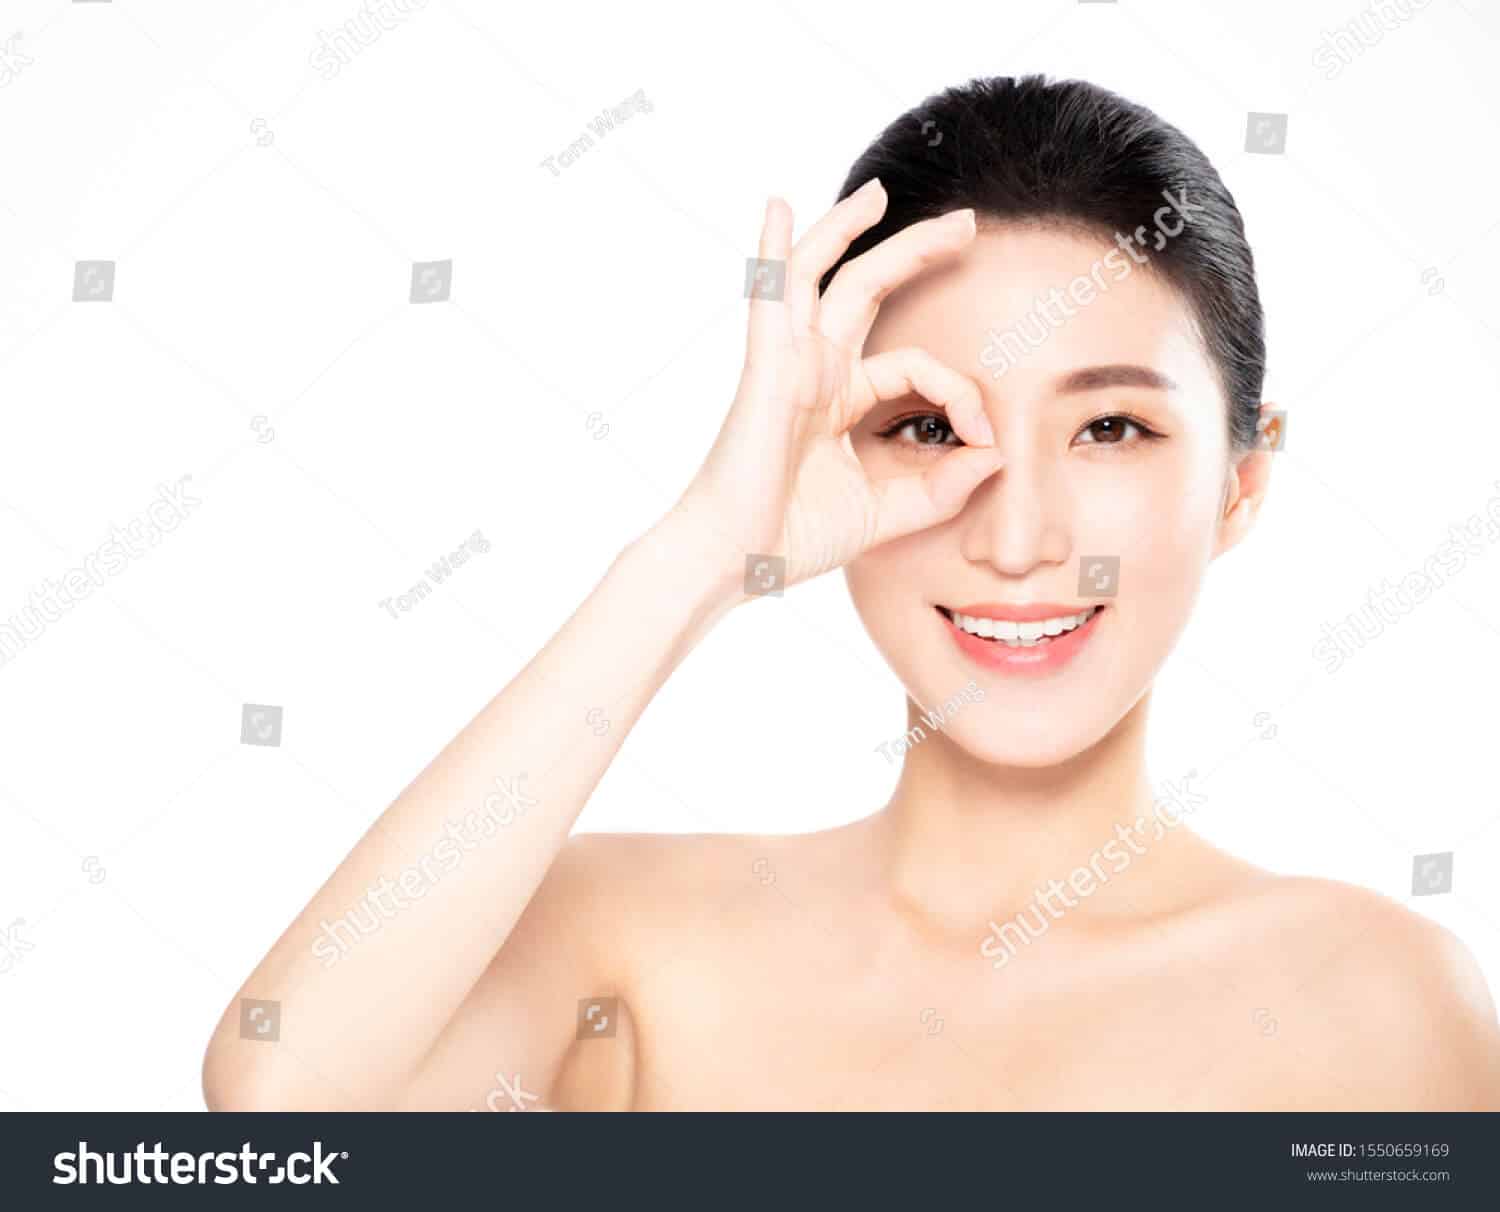 1 triệu 800 ngàn hình ảnh người đẹp Châu Á chất lượng cao trên Shutterstock